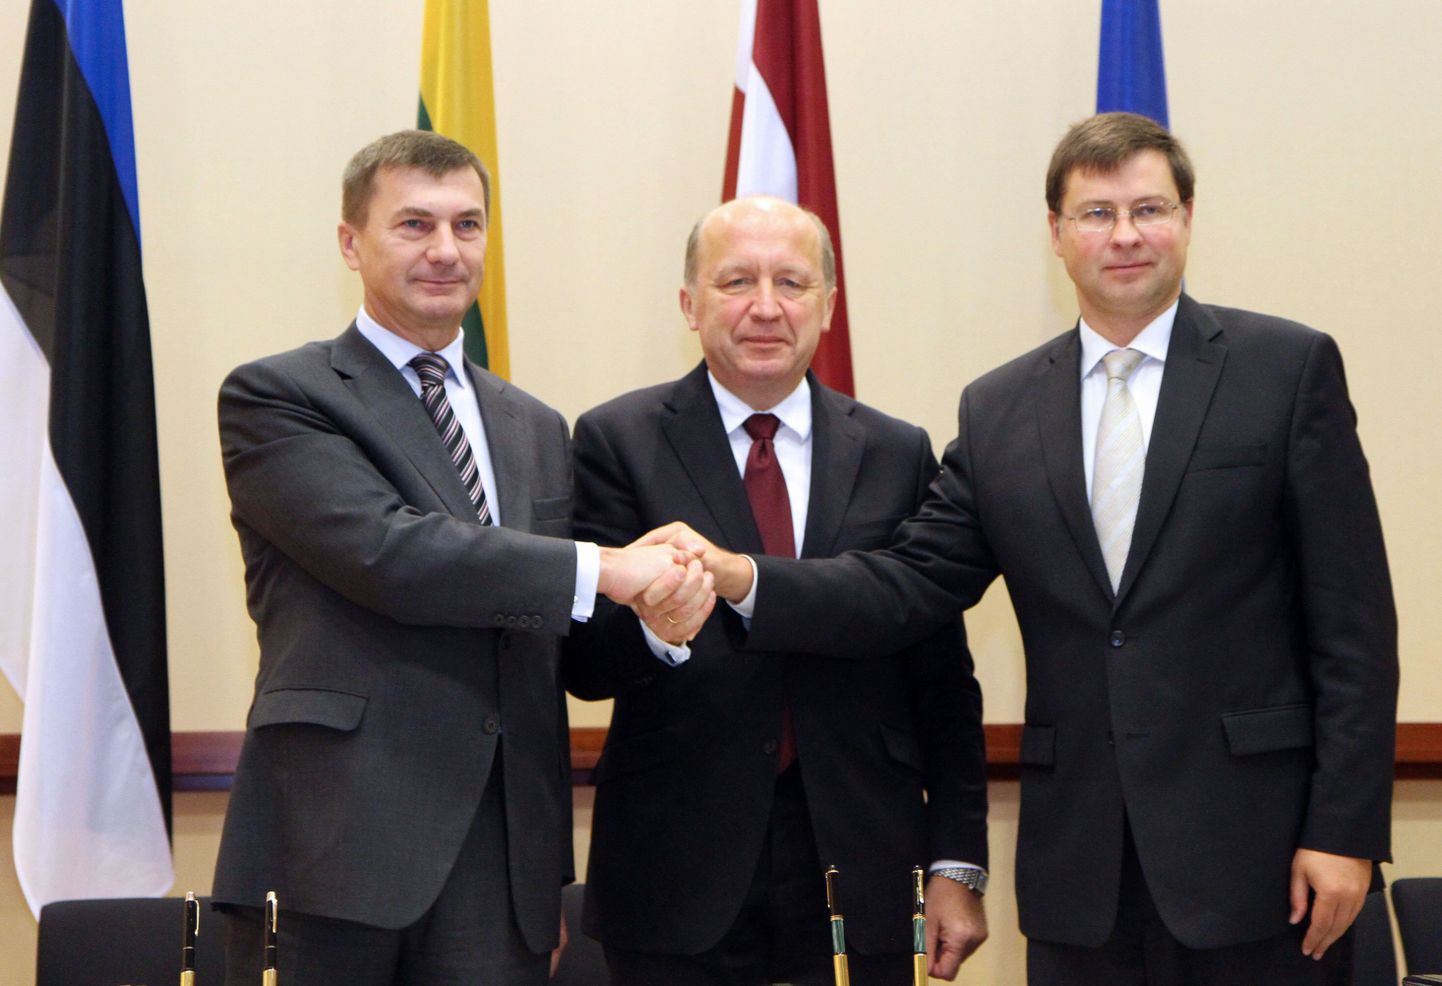 Eesti peaminister Andrus Ansip (vasakult) koos Leedu ja Läti ametivendade Andrius Kubiliuse ja Valdis Dombrovskisega täna Vilniuses Balti Ministrite Nõukogu kohtumisel.